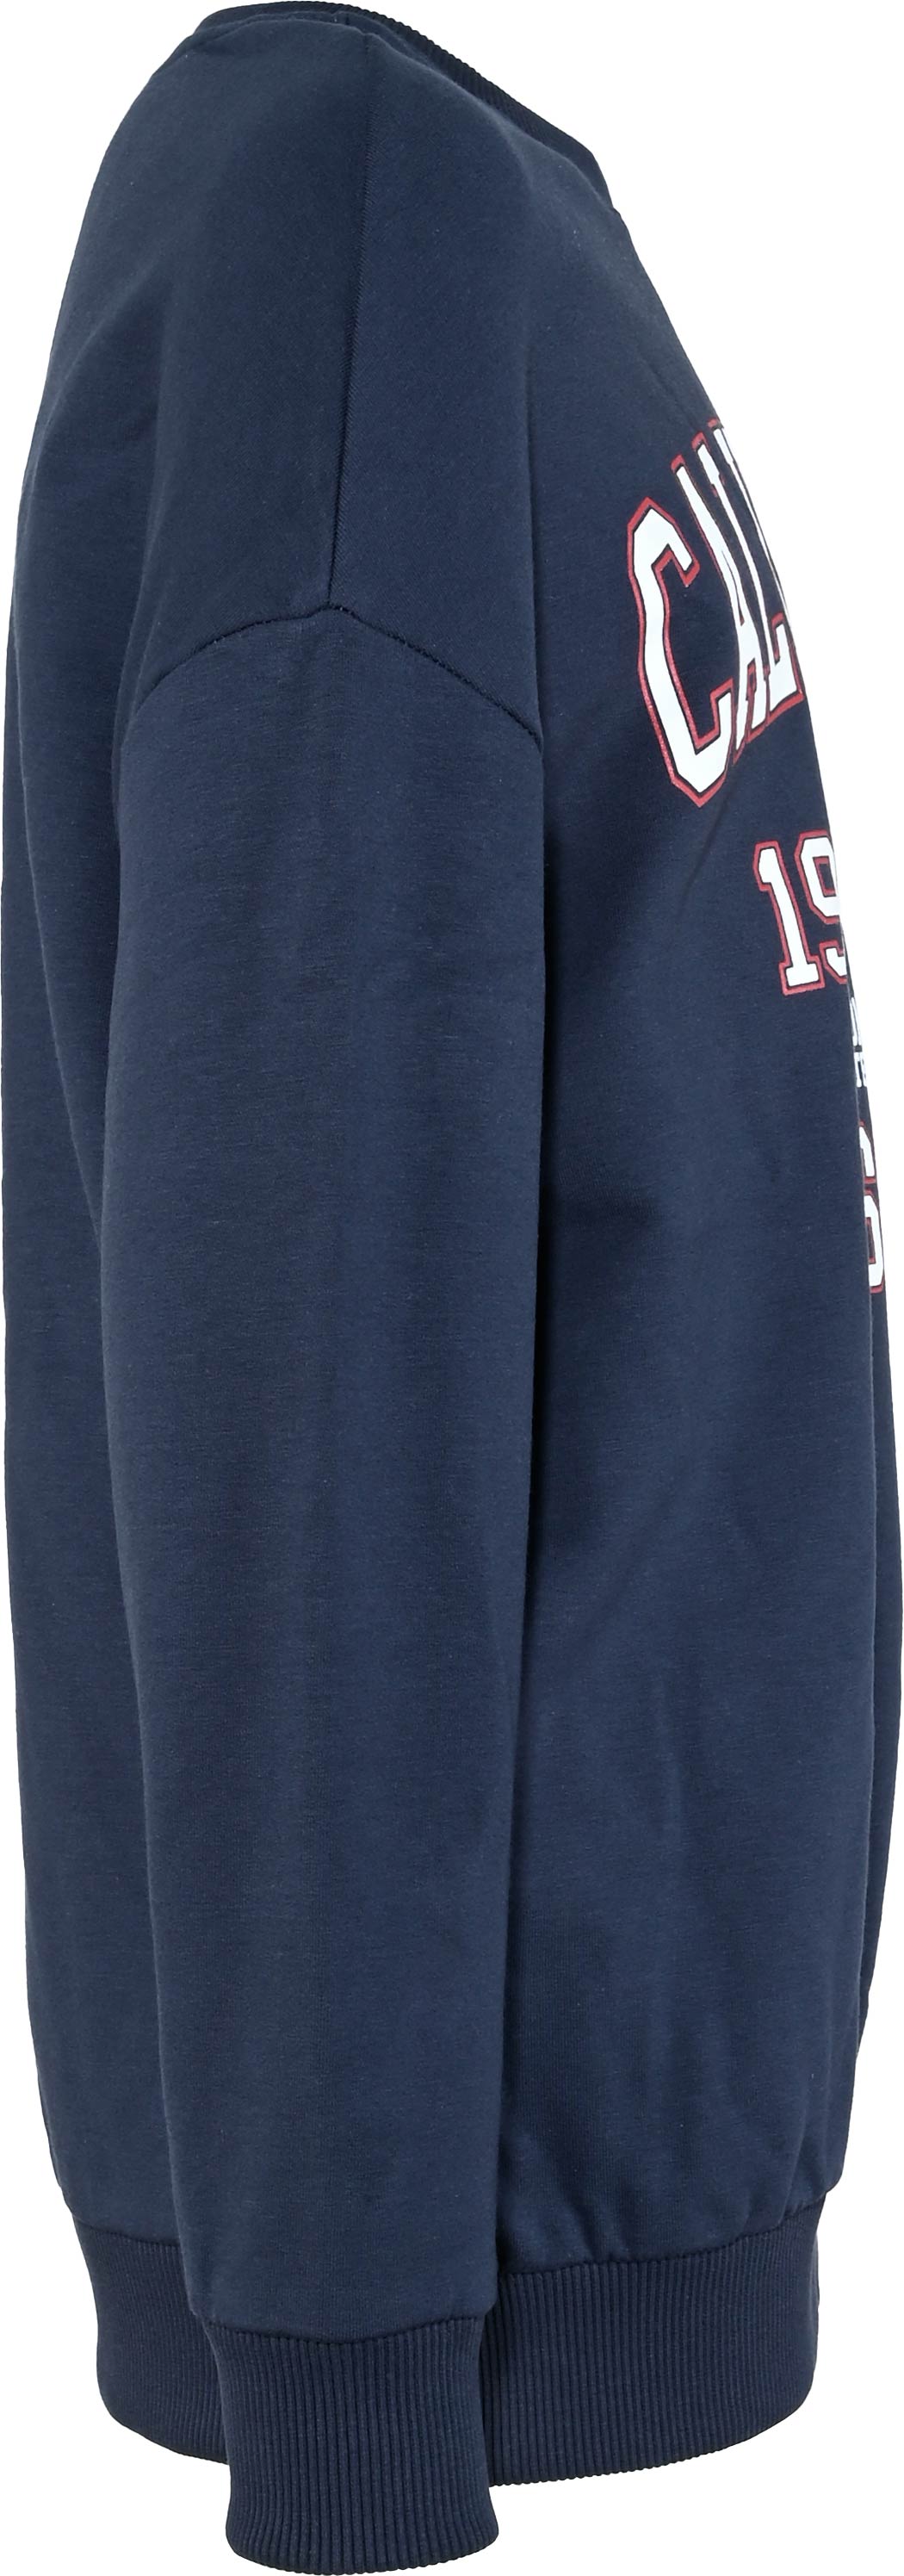 5820-Girls Sweatshirt Oversized, California